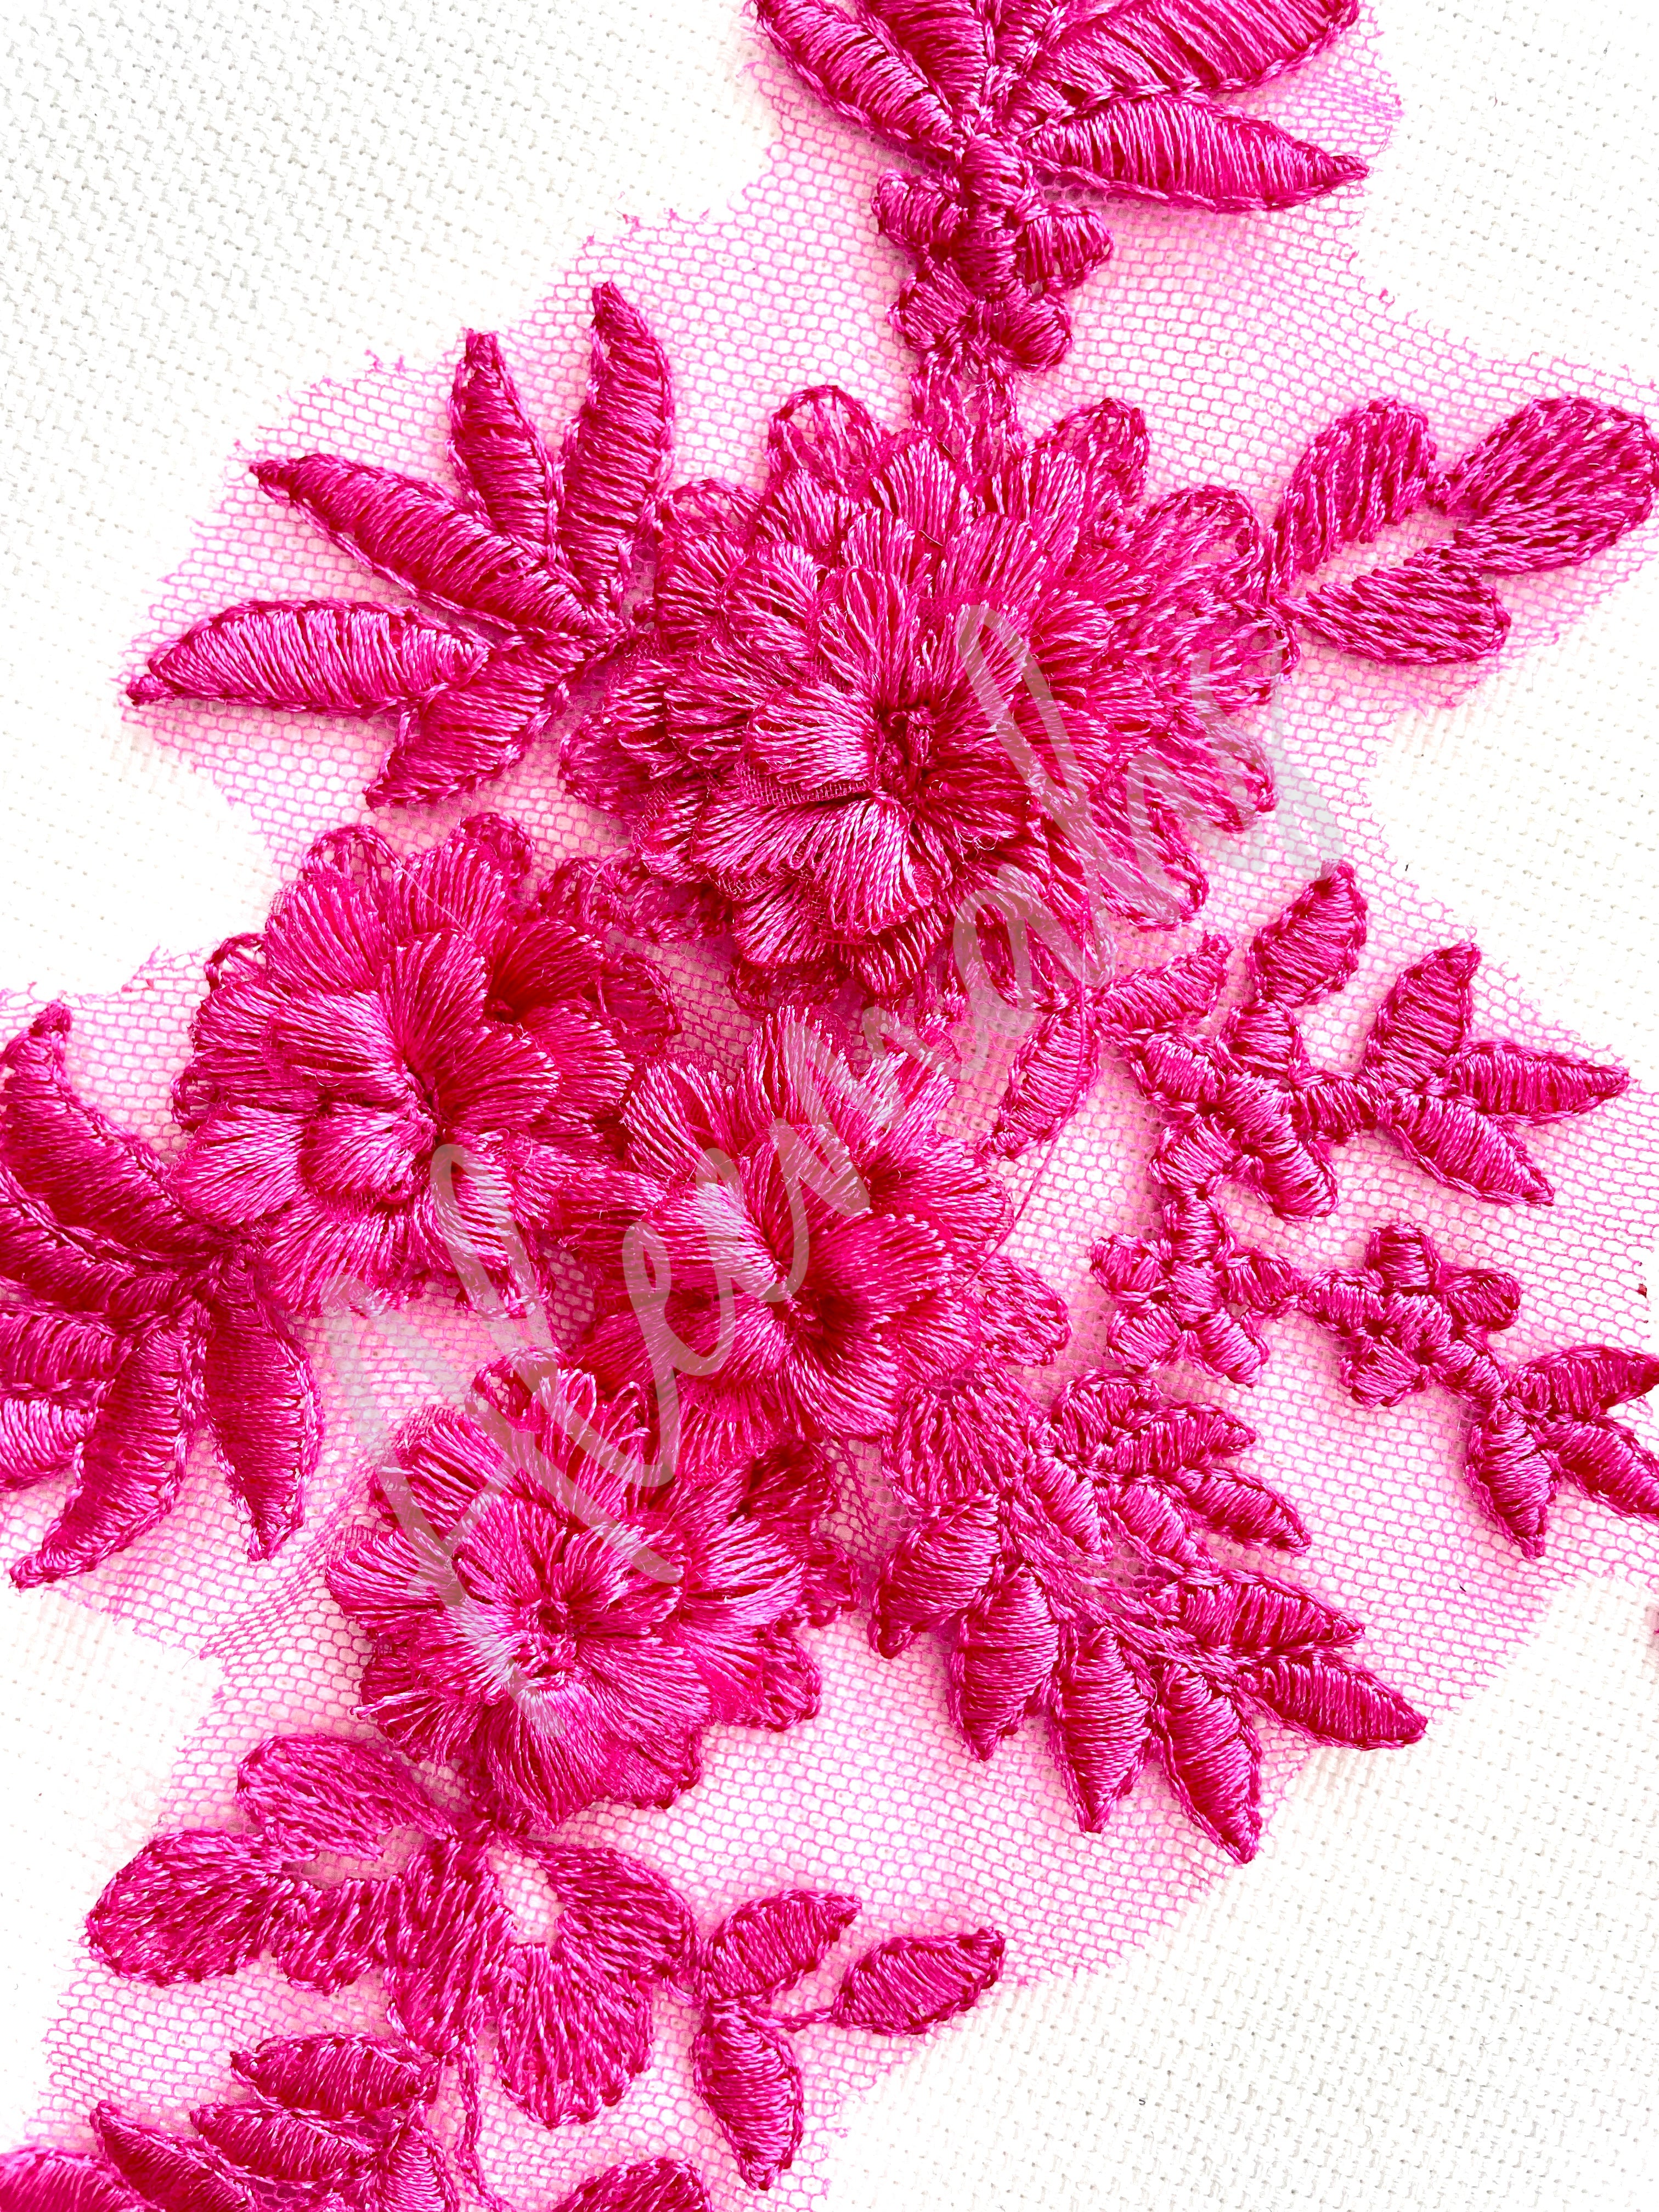 LA-033: 3D floral lace applique pair: Fuchsia